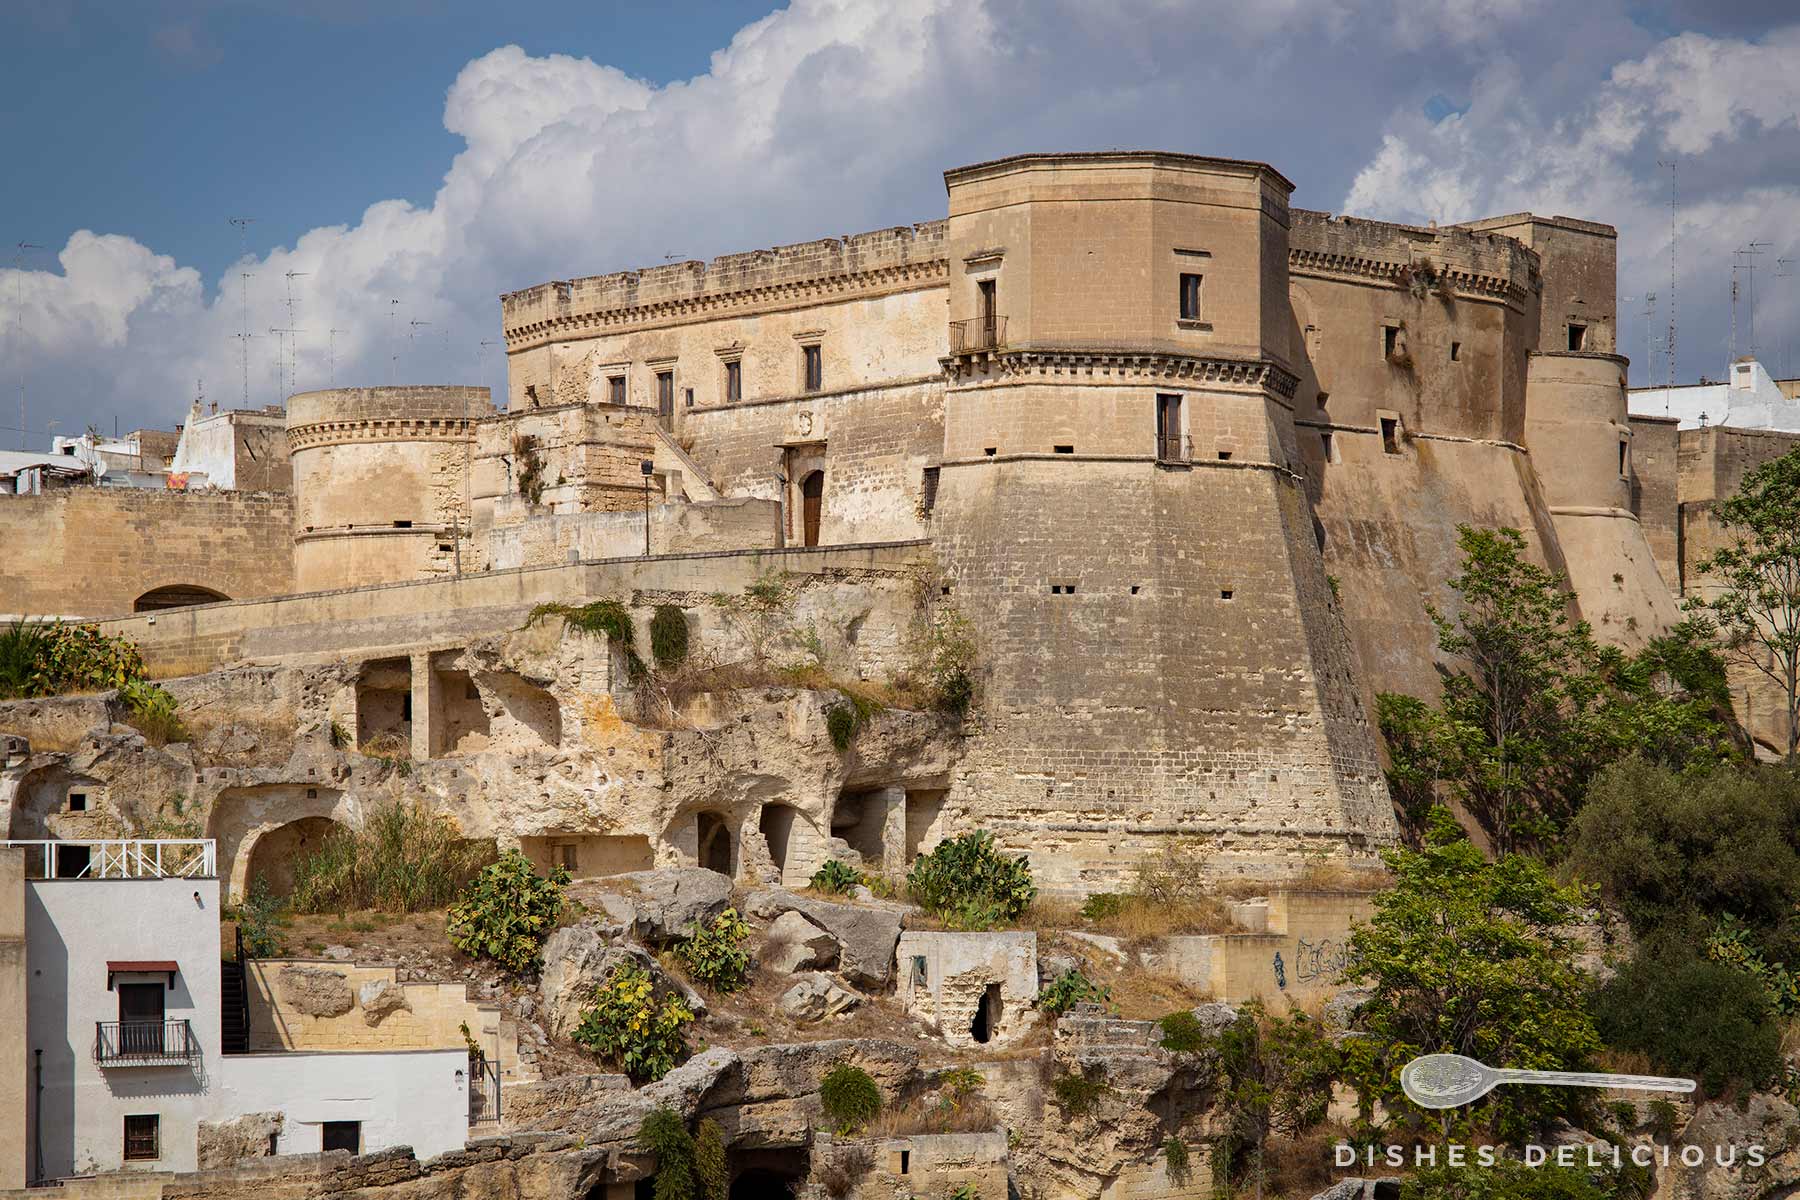 Die Burg von Massafra auf dem Felssporn der Stadt. Die Burg wirkt verwachsen mit dem steinernen Untergrund.